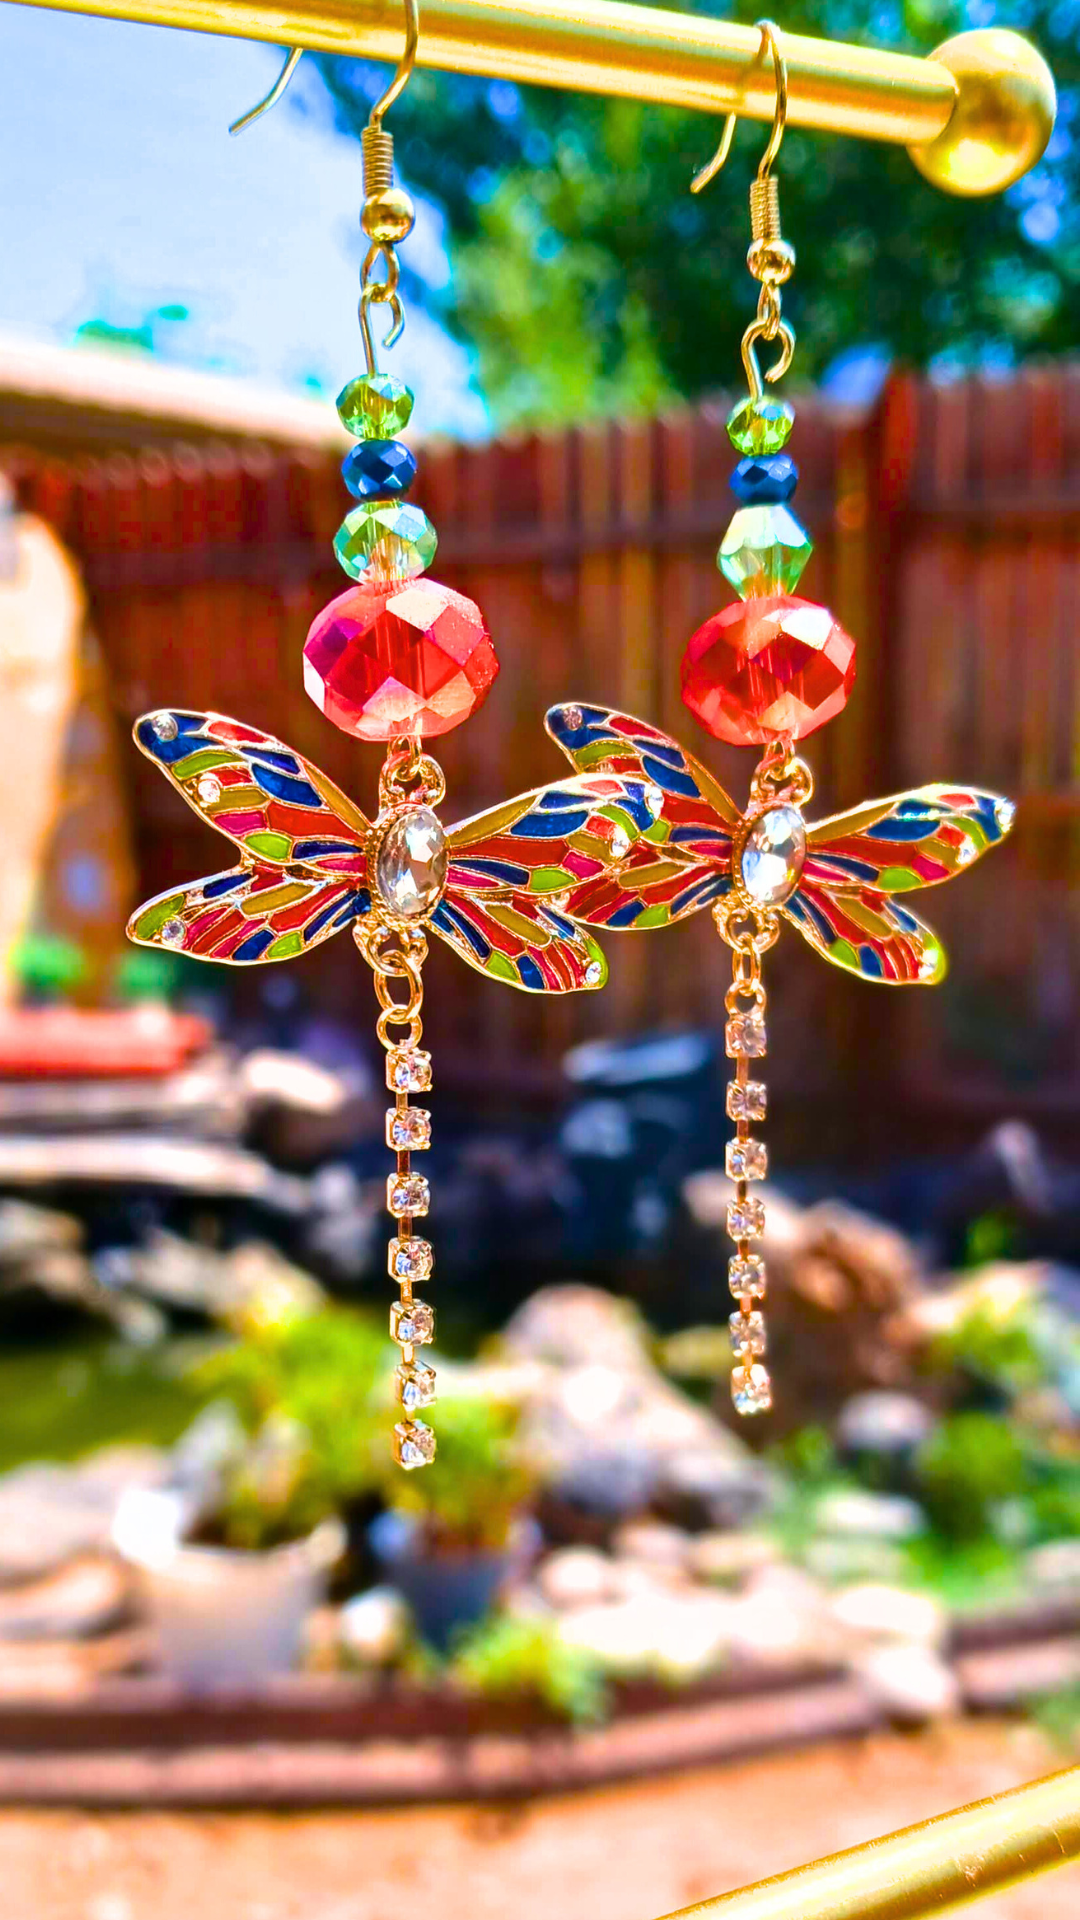 Buy Cute Yellow Butterfly Earrings Handmade Y2k Online in India - Etsy